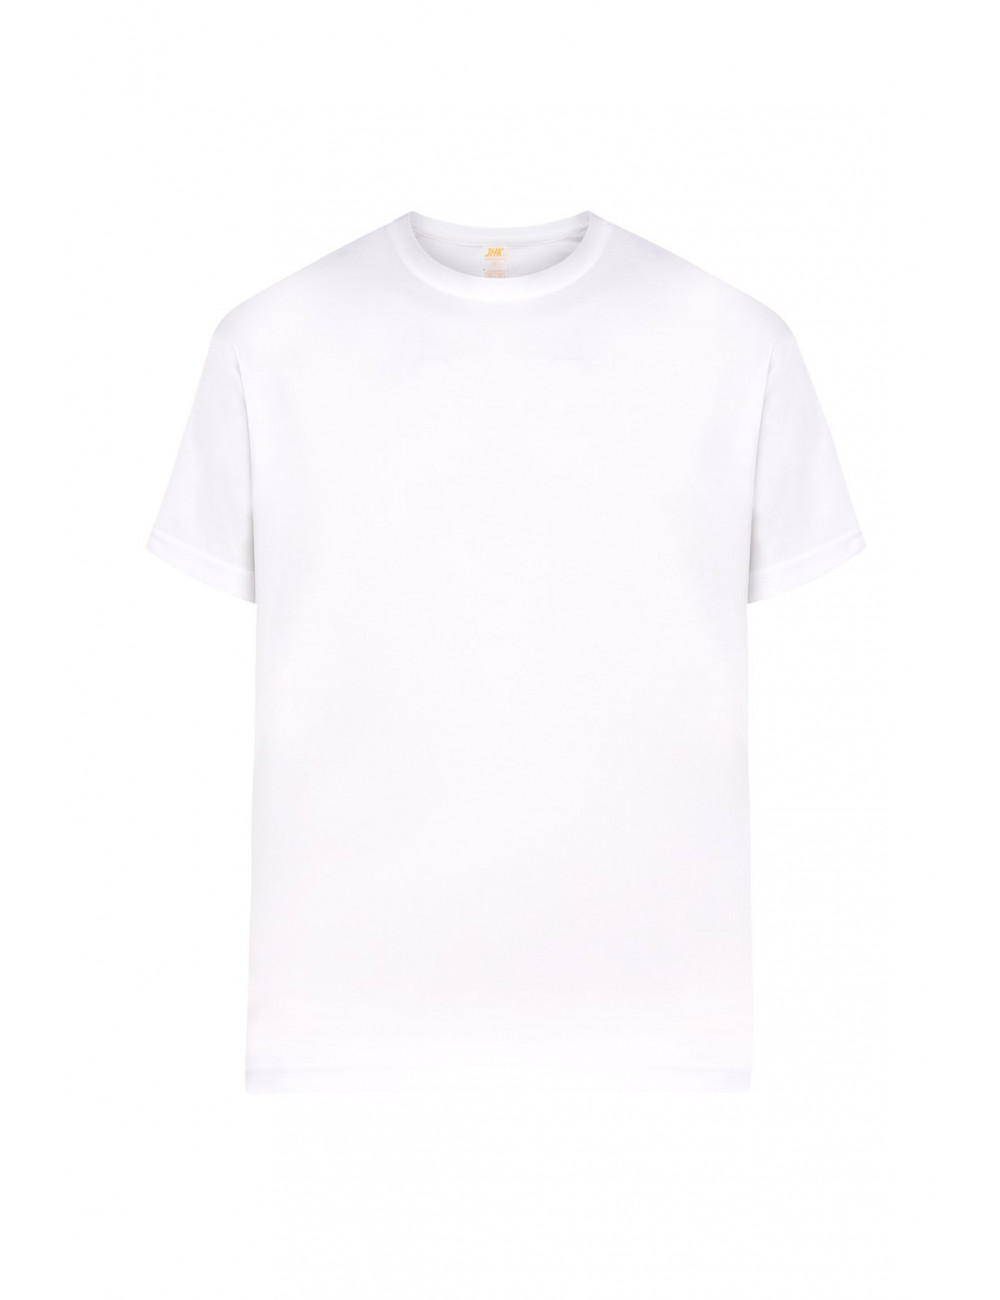 Men`s t-shirt ocean sport unisex wh white Jhk